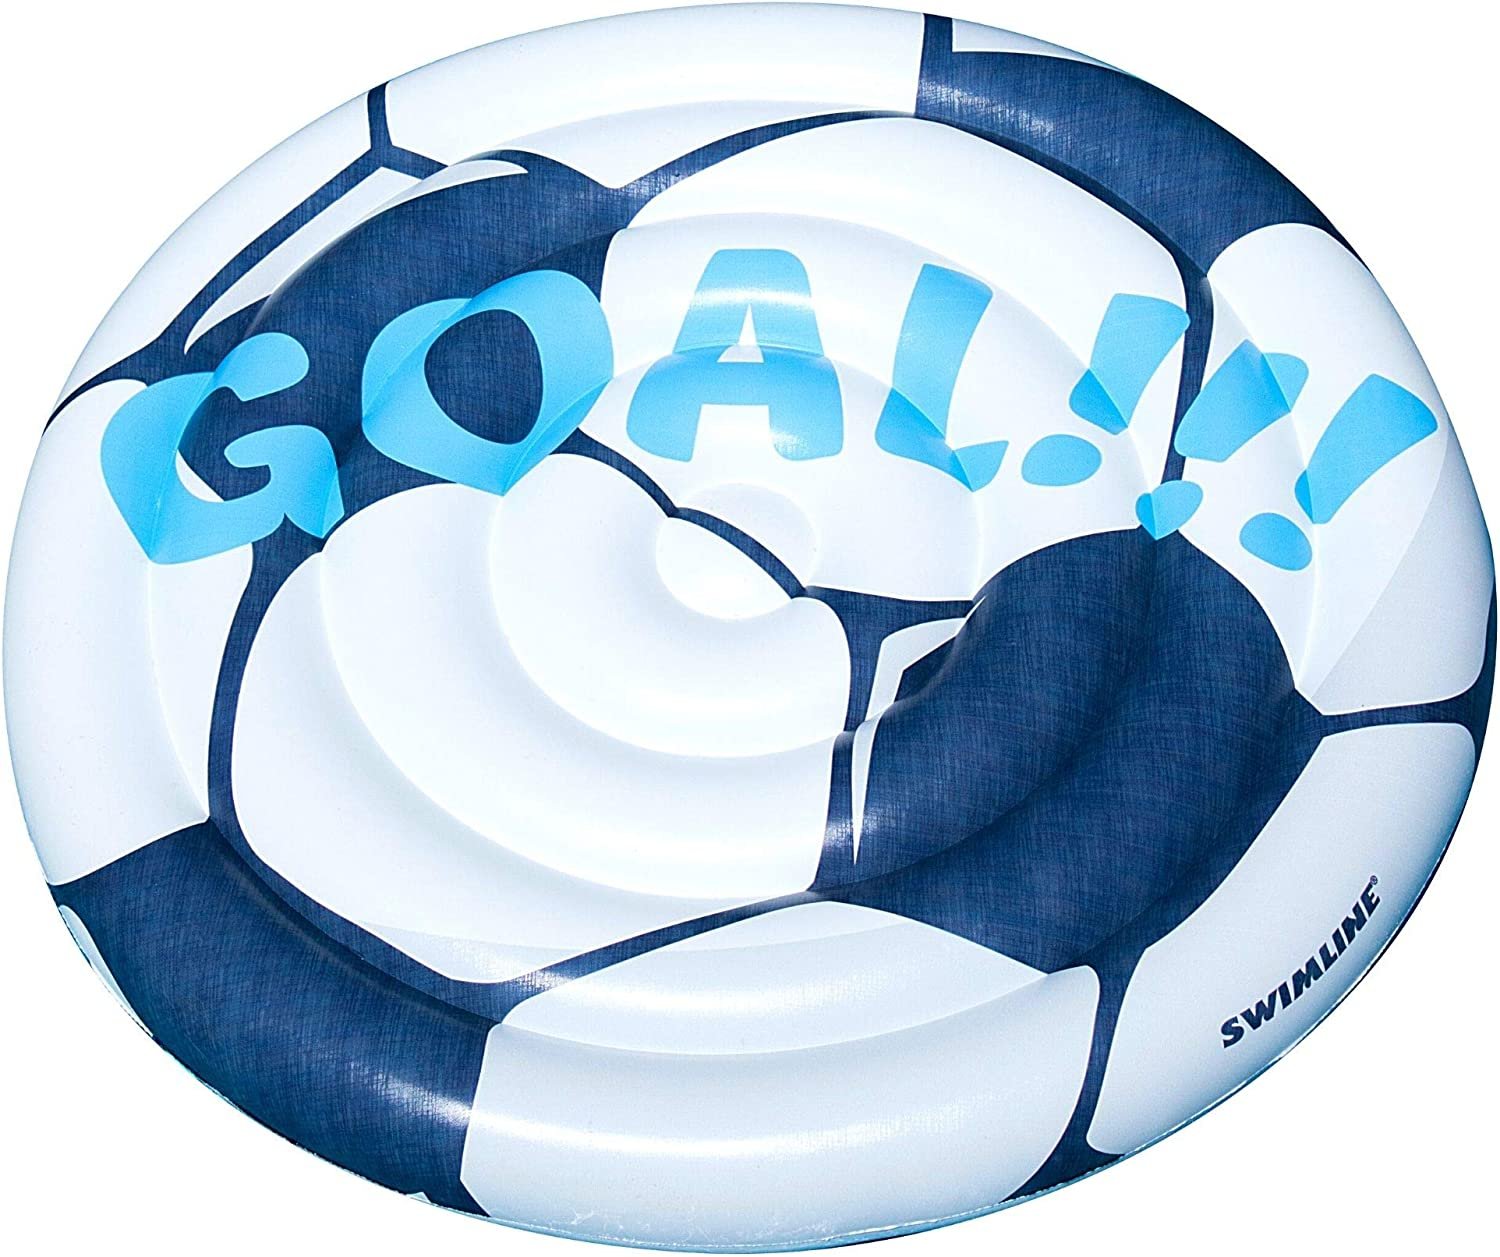 Swimline Inflatable Soccer Ball Ride-On Pool Float Blue/White, 60"